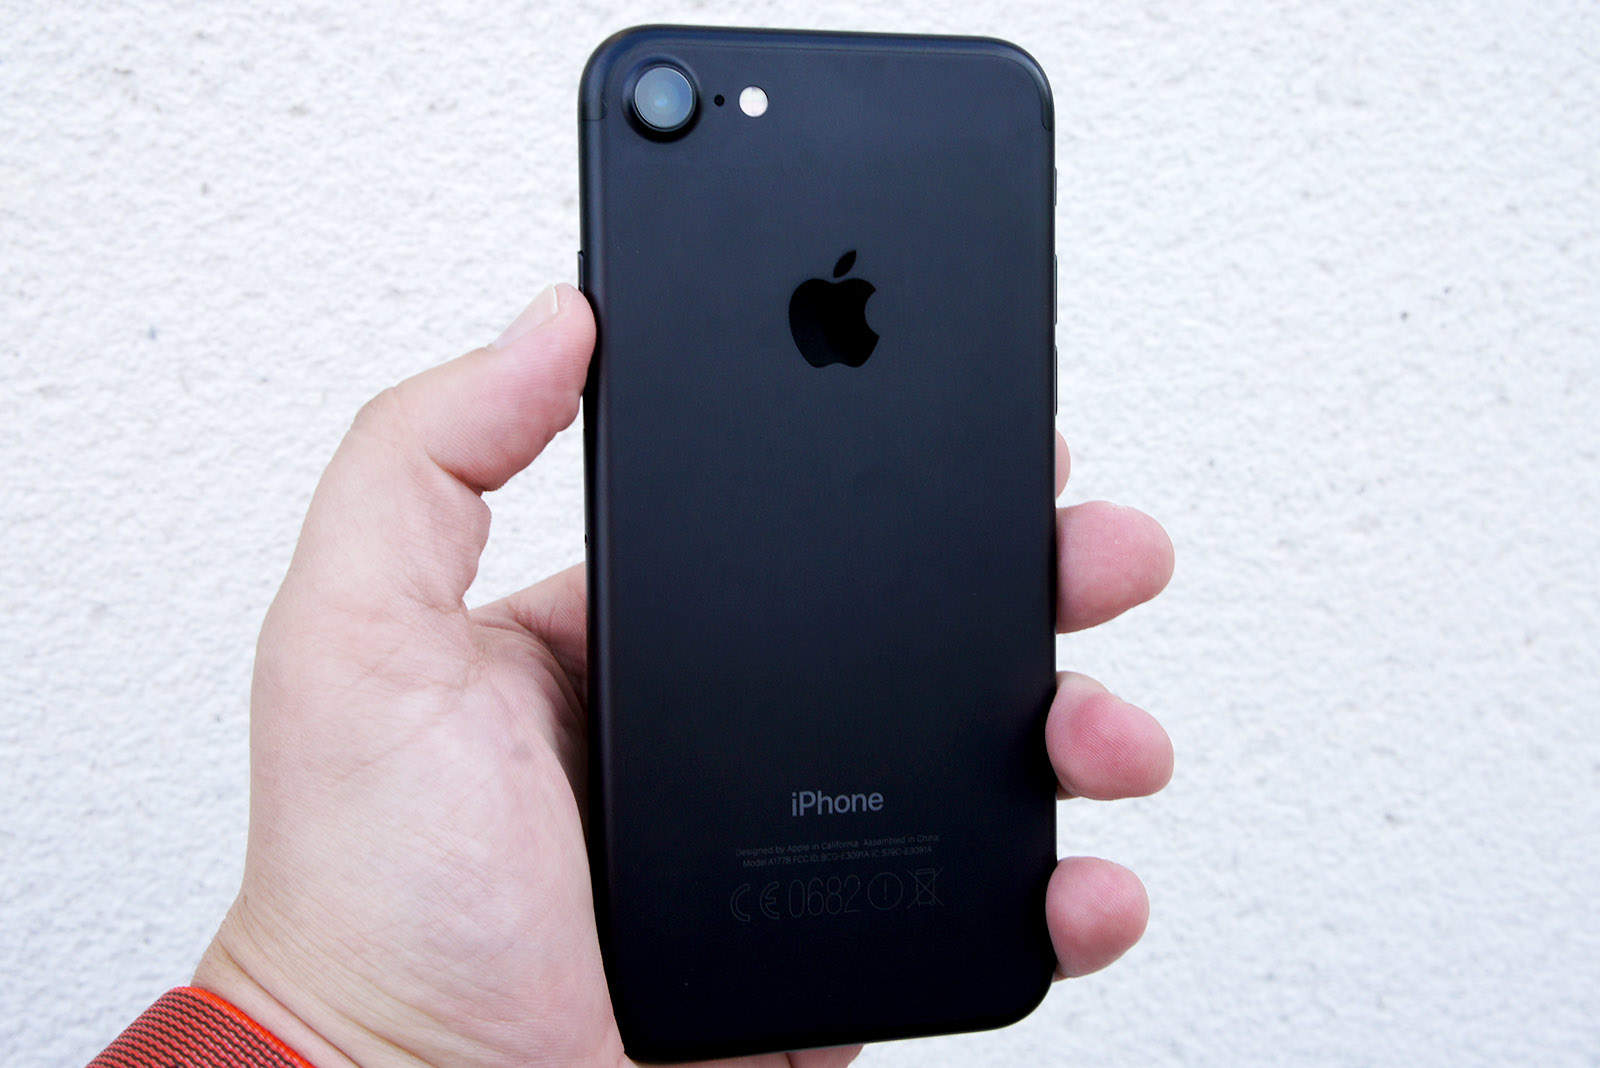 iPhone 7 black